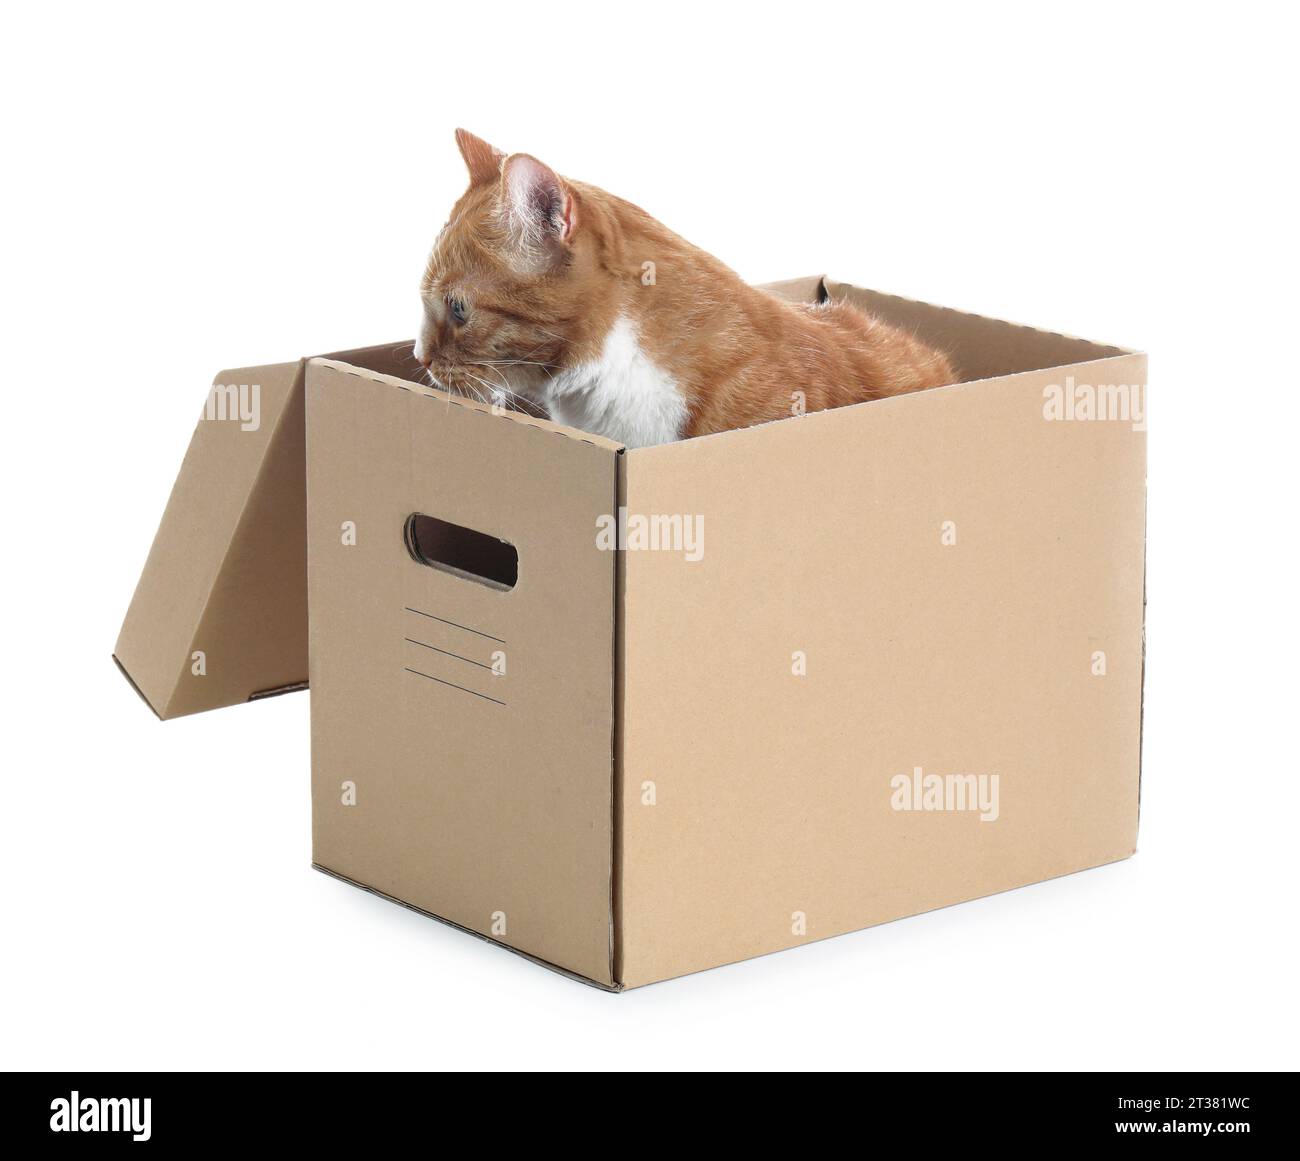 Gatos en cajas. Lindas pegatinas con gato sentado, durmiendo y